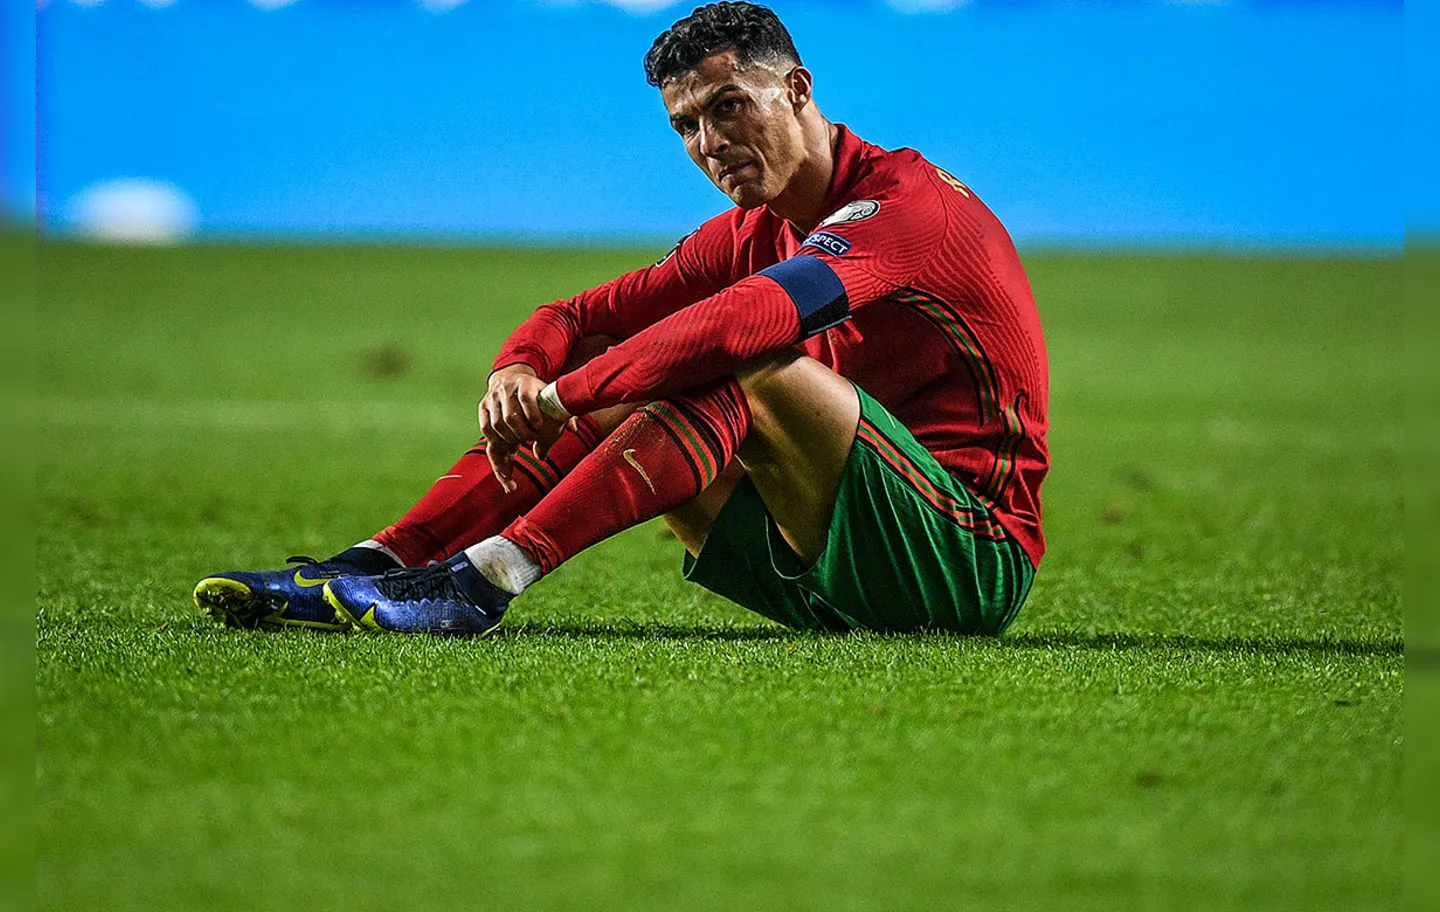 Em Portugal, o clima também está tenso, após a derrota nos últimos instantes diante da Sérvia que colocou os portugueses na repescagem | Foto: AFP